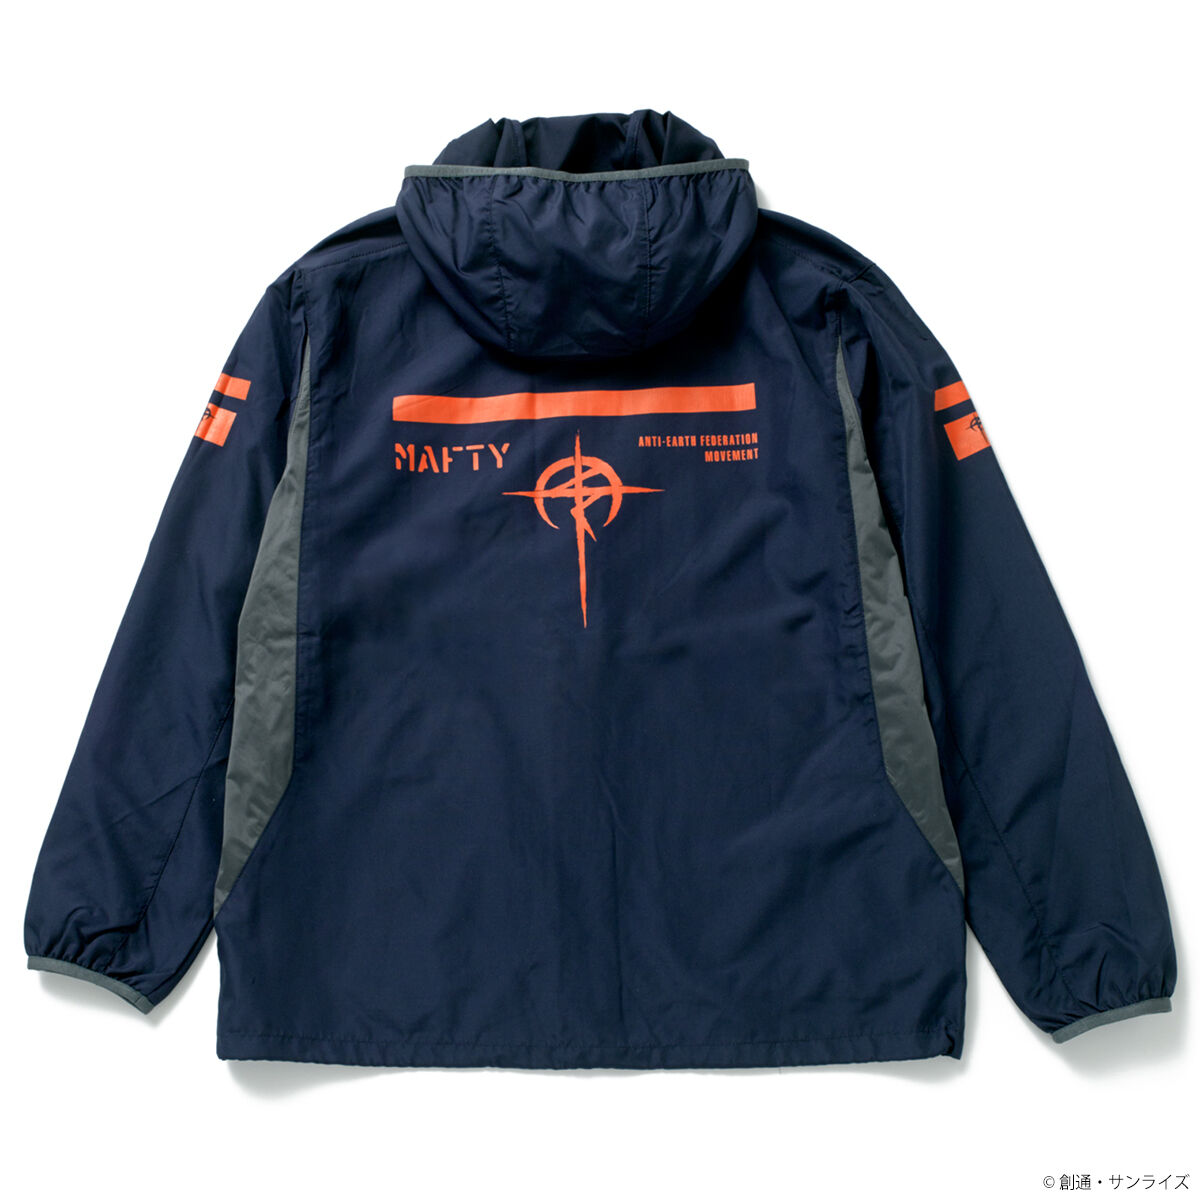 【閃光のハサウェイ】STRICT-Gリップストップジャケット マフティー XL